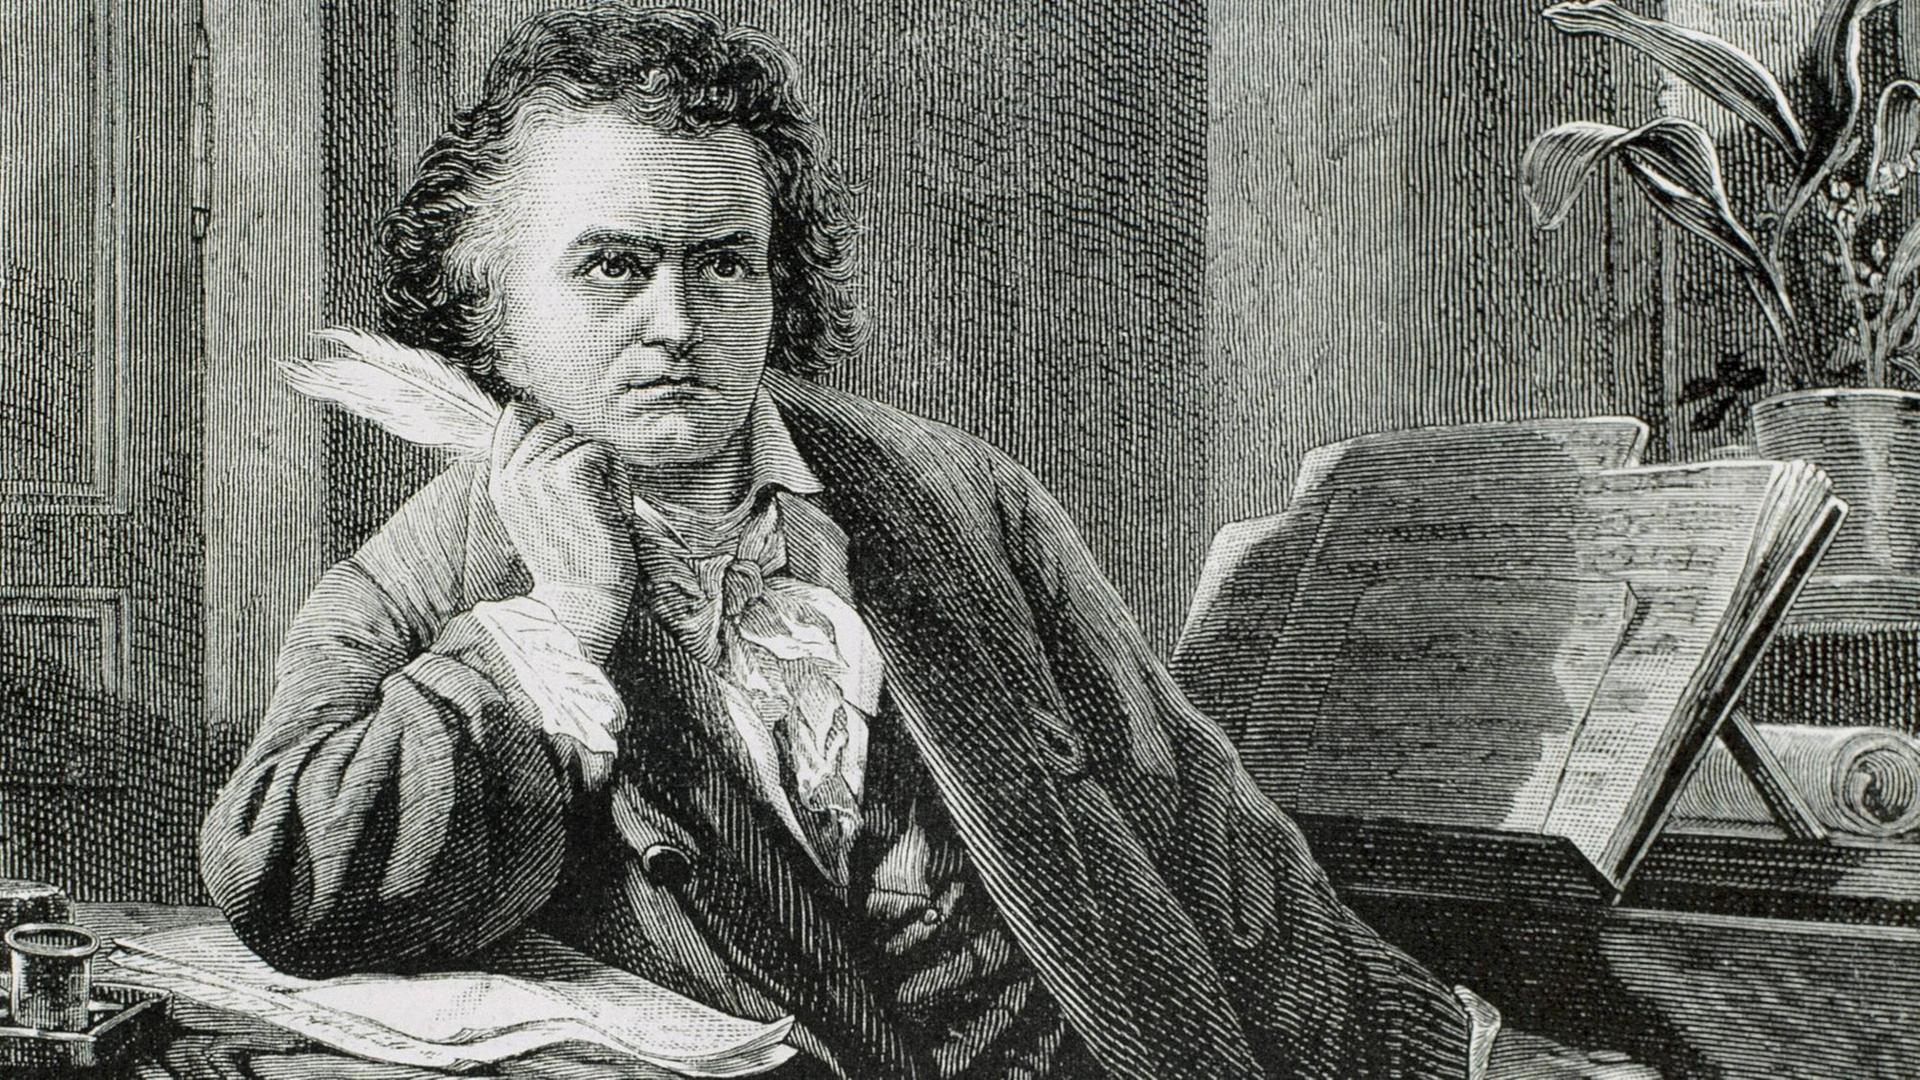 Eine schwarz-weiße Darstellung aus dem 19. Jahrhundert zeigt Ludwig van Beethoven am Klavier sitzend, er stützt seinen Kopf auf seine rechte Hand, hat eine Feder in der Hand und guckt am Künstler vorbei.